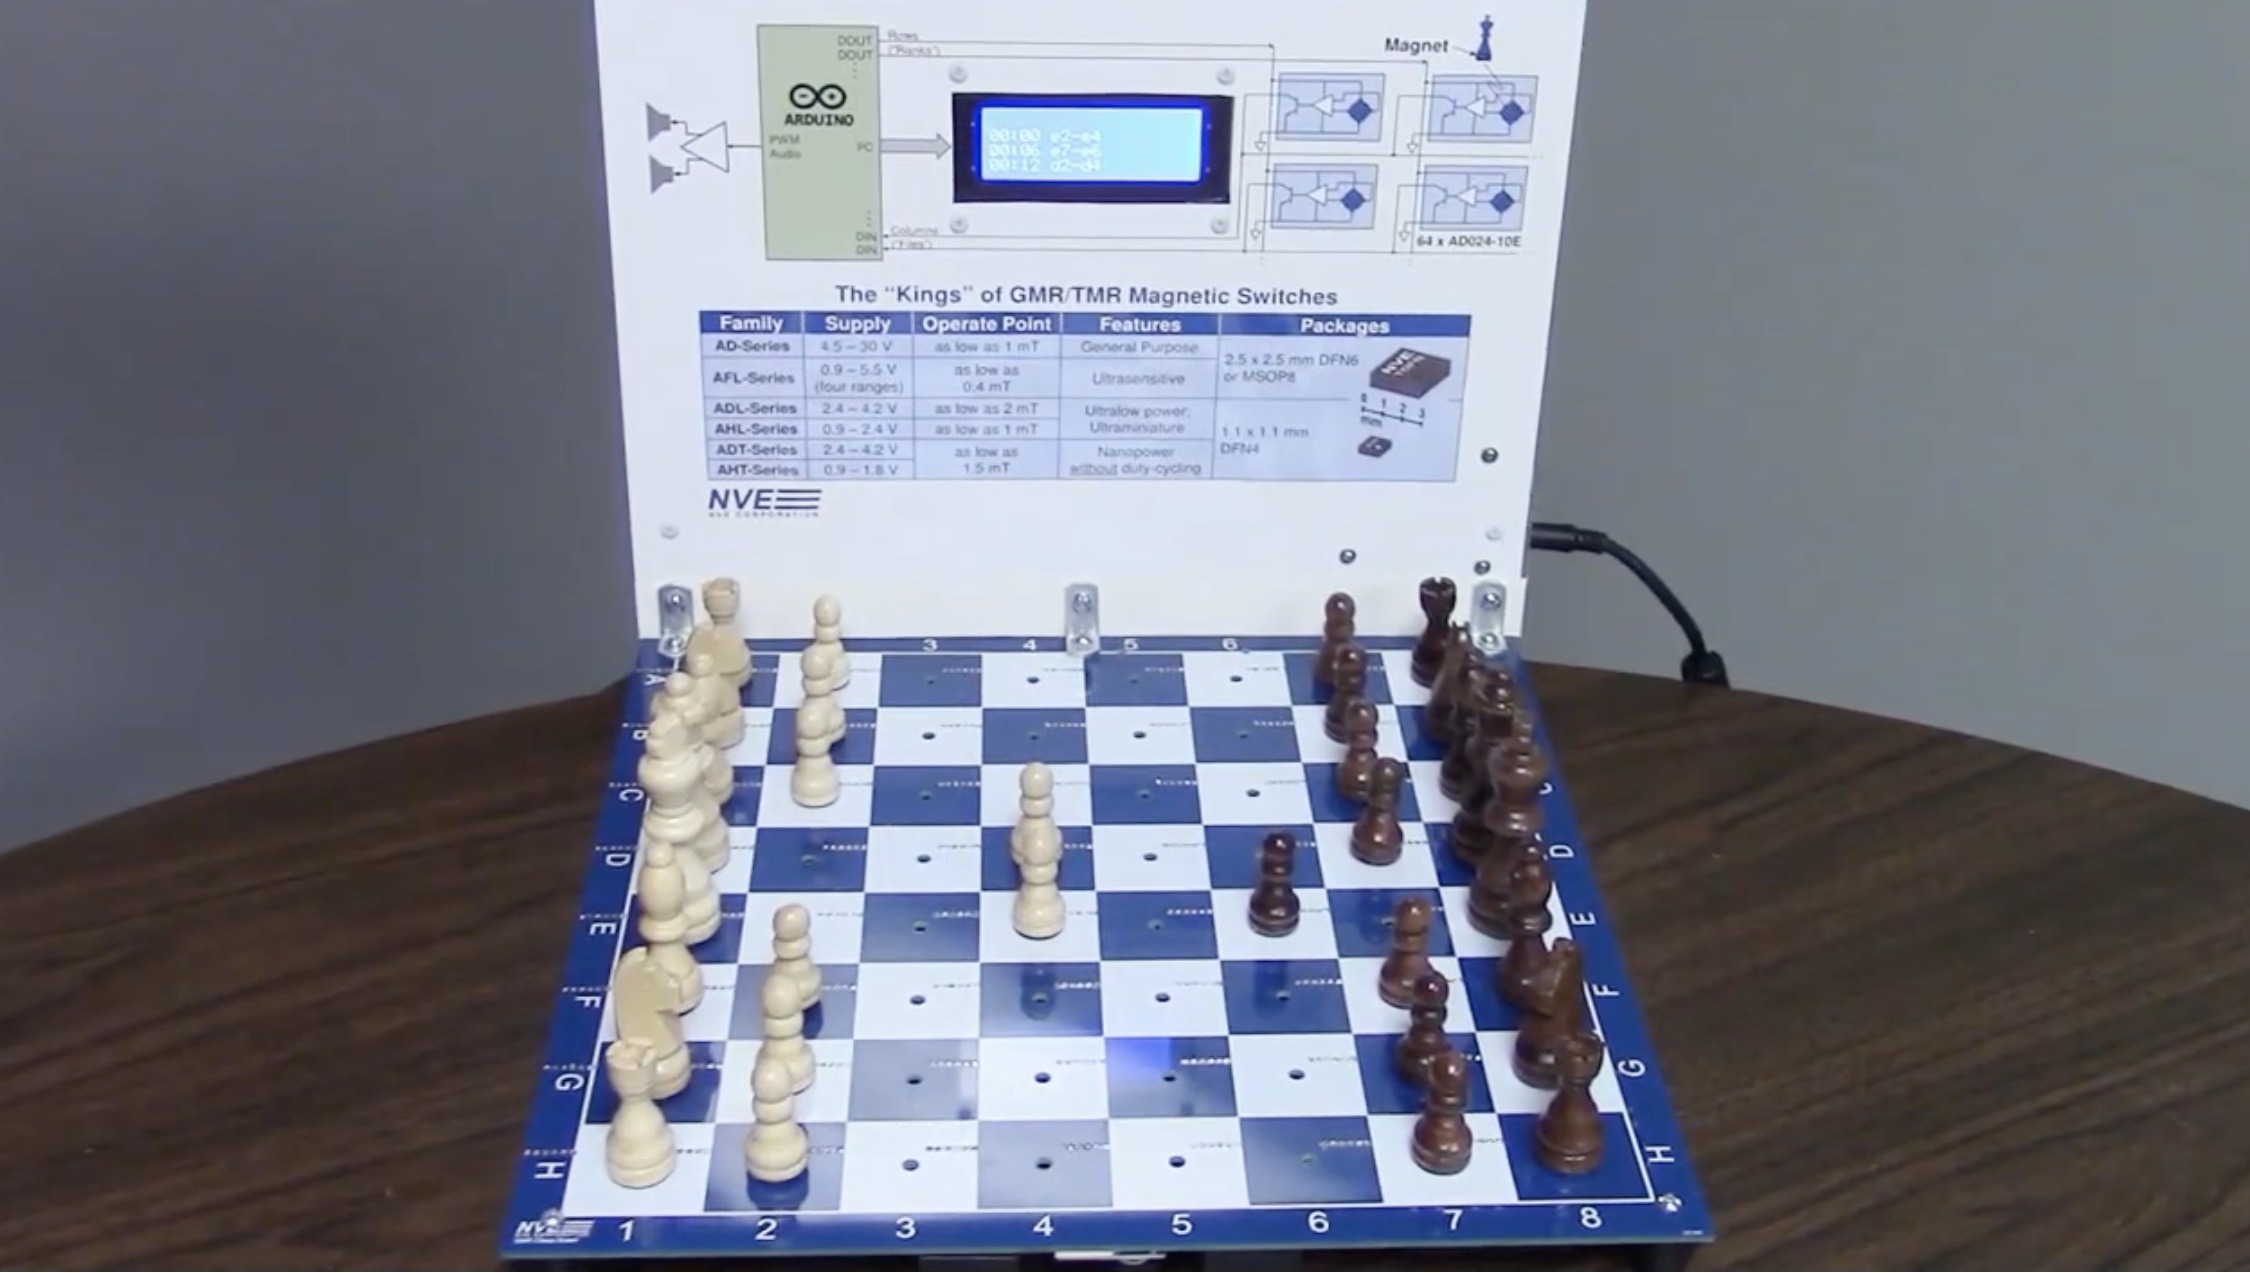 Los prácticos interruptores magnéticos hacen posible este tablero de ajedrez electrónico